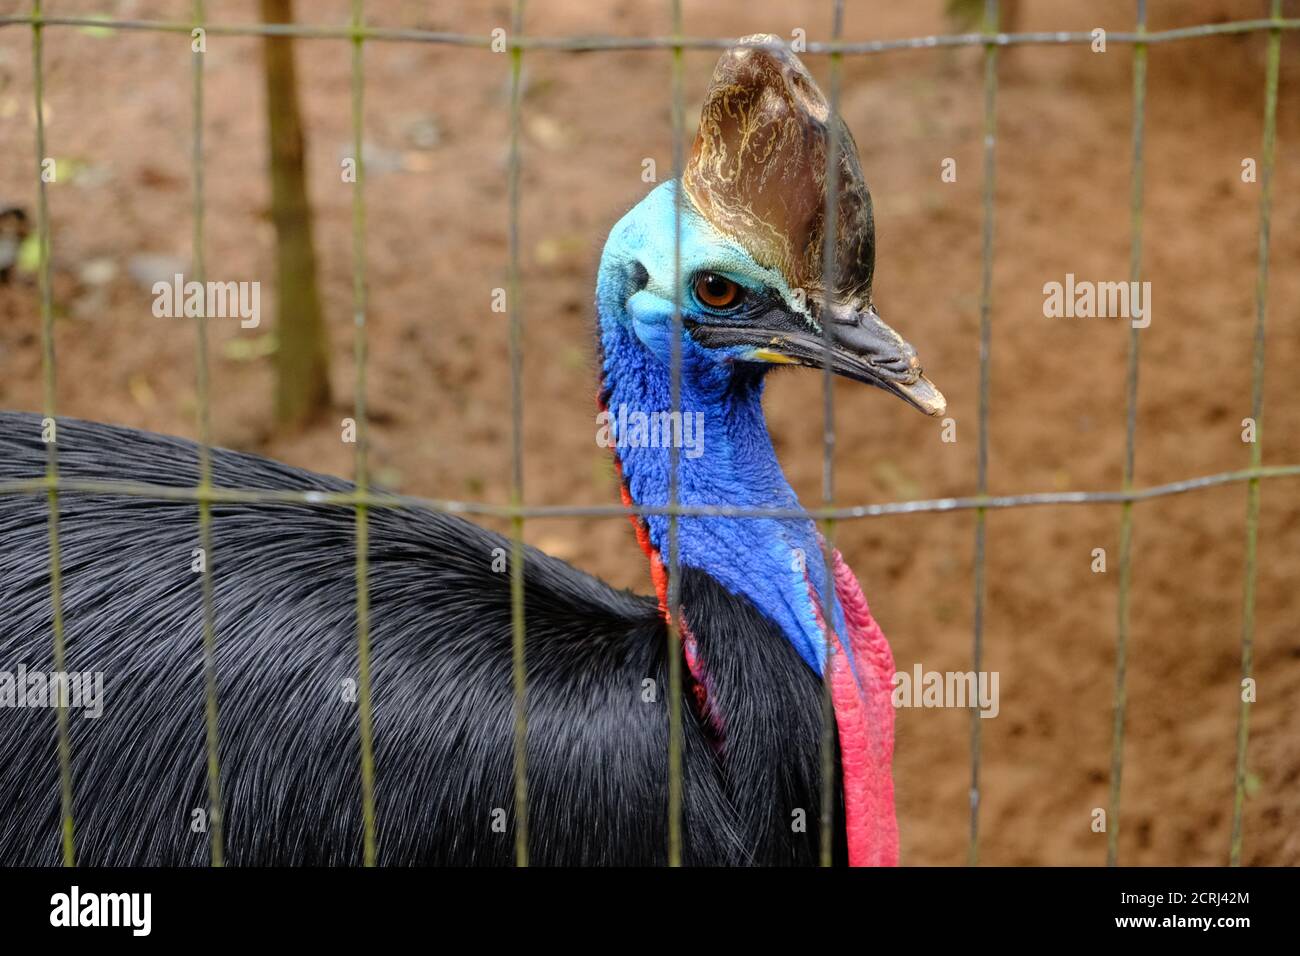 Brésil Foz do Iguaçu - Zoo - Parque das Aves Oiseau casowaire du sud sans vol (Casuarius casuarius) Banque D'Images